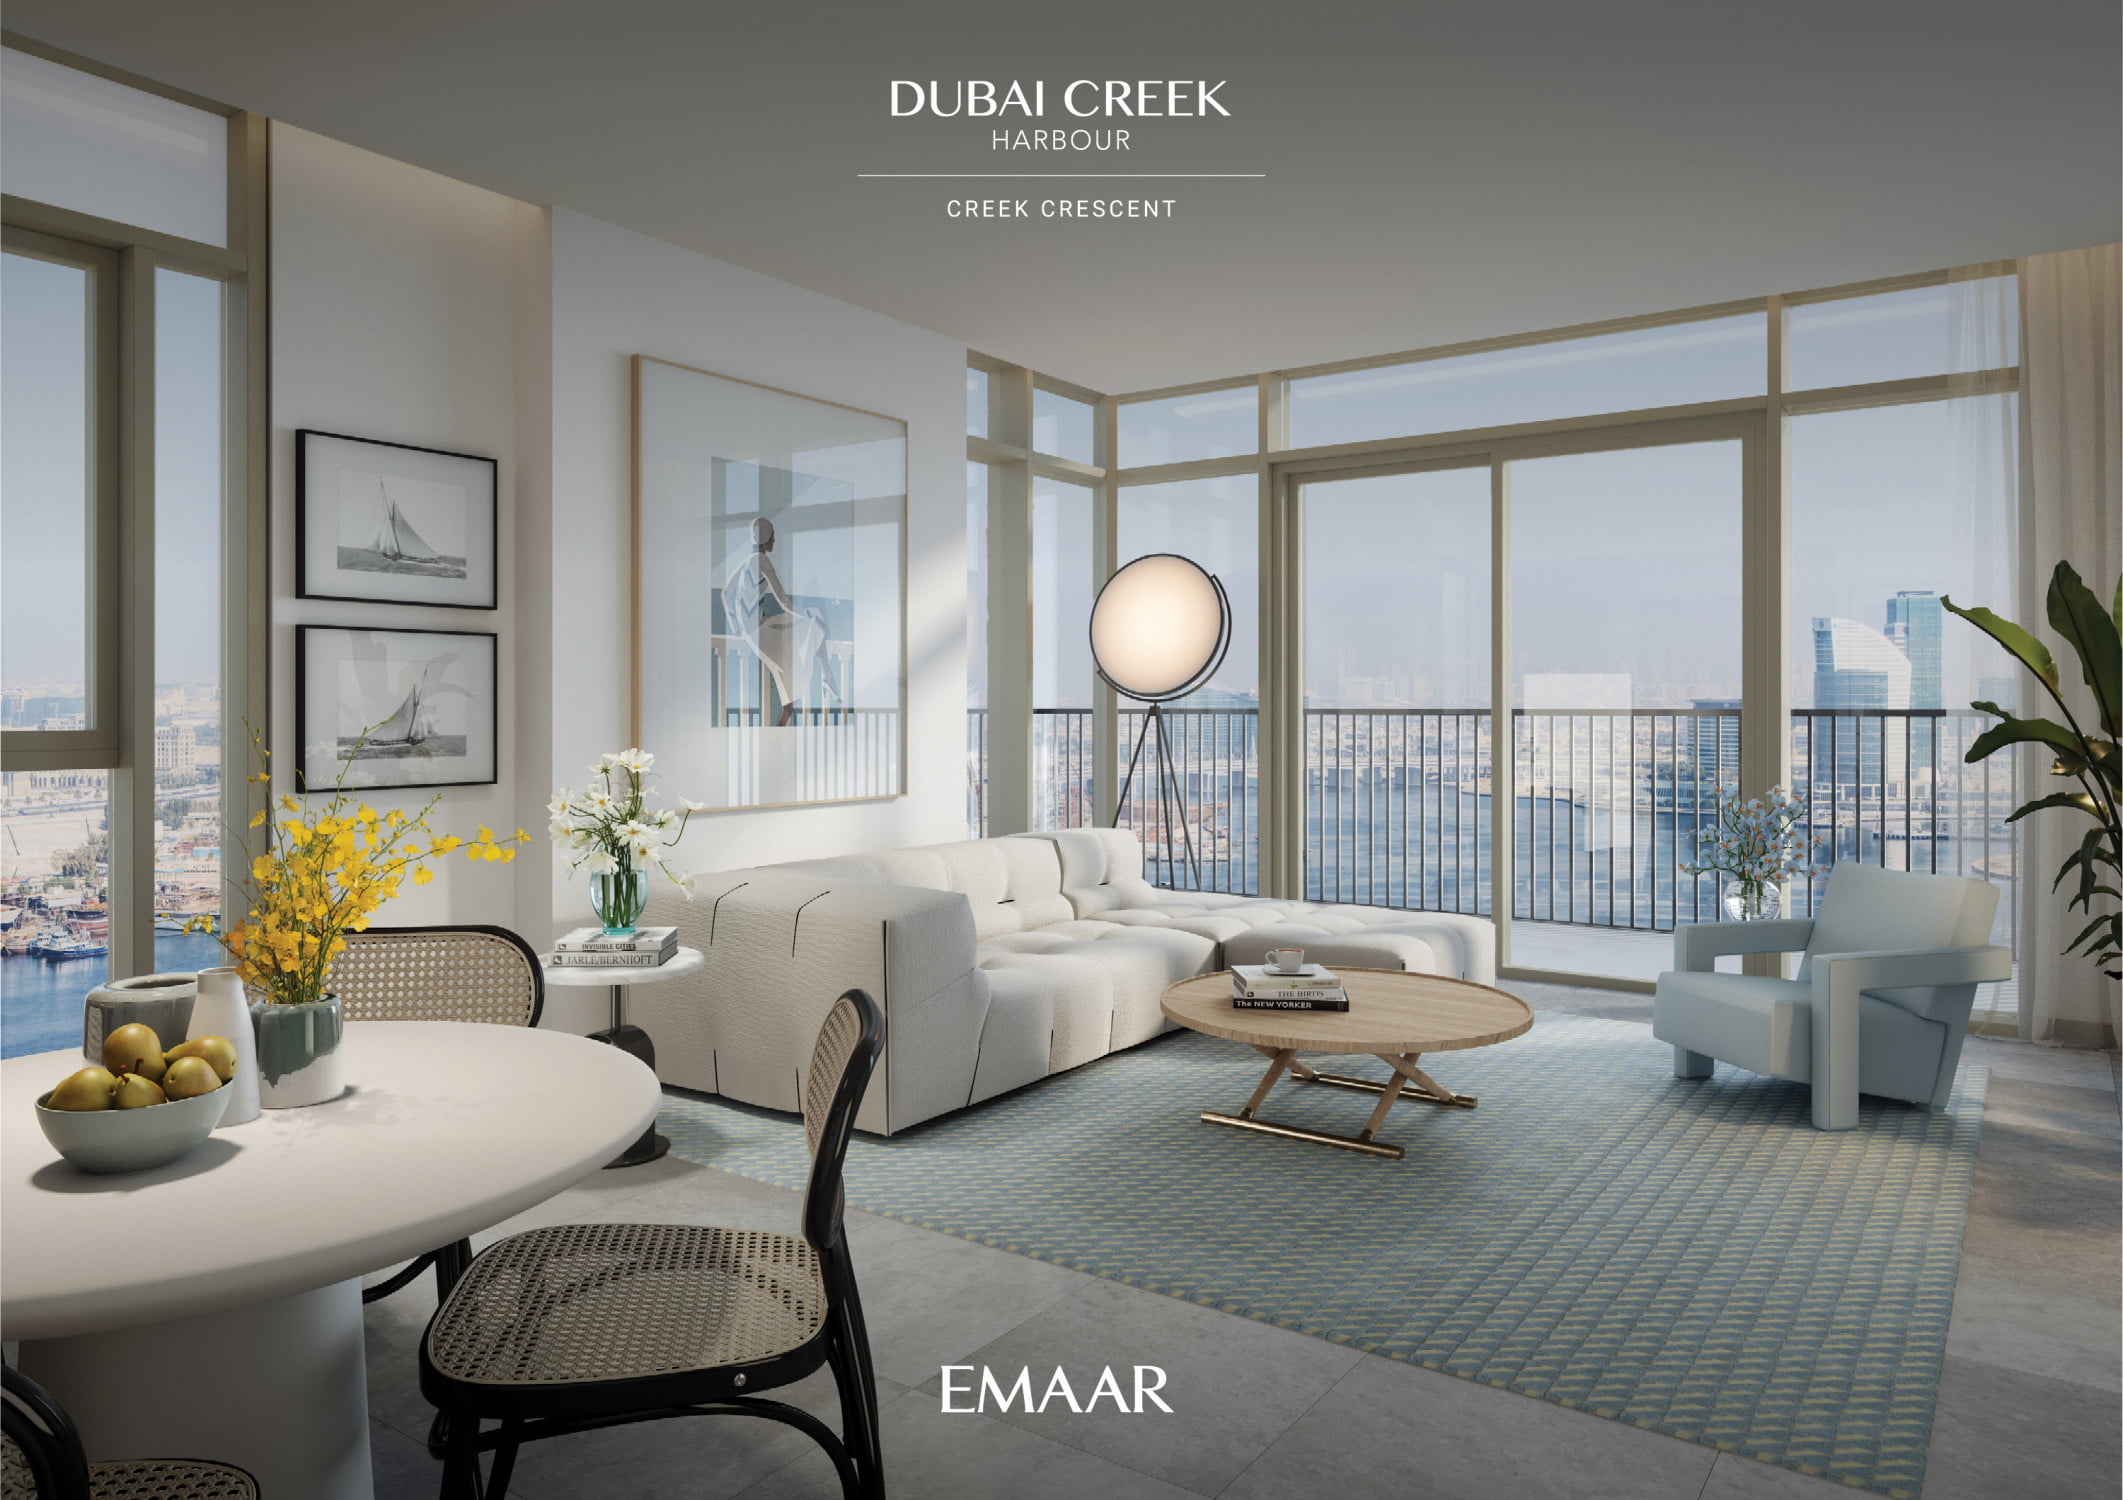 CREEK CRESCENT DUBAI CREEK HARBOUR appartement - Immobilier Dubai